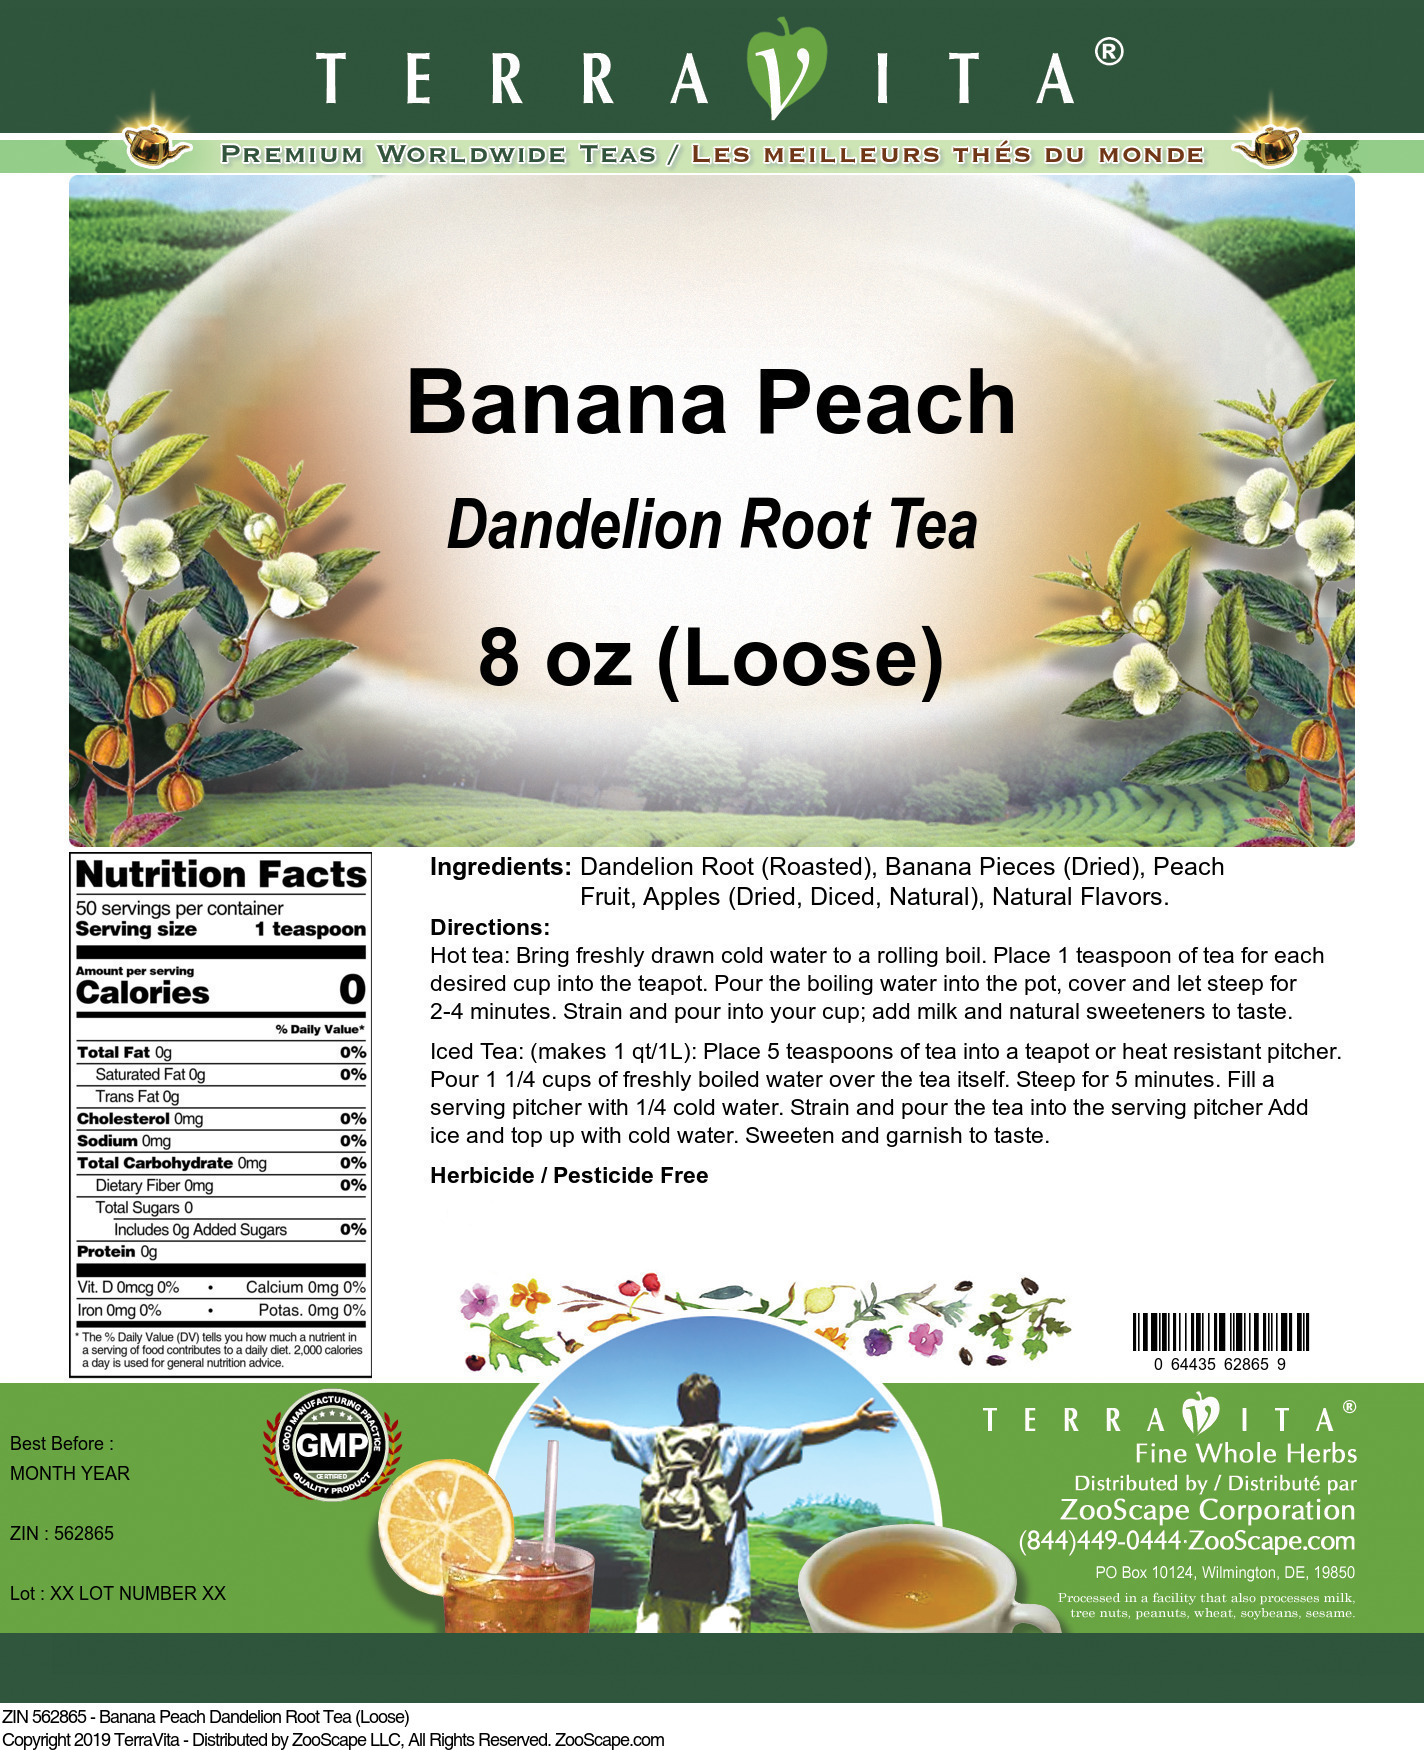 Banana Peach Dandelion Root Tea (Loose) - Label